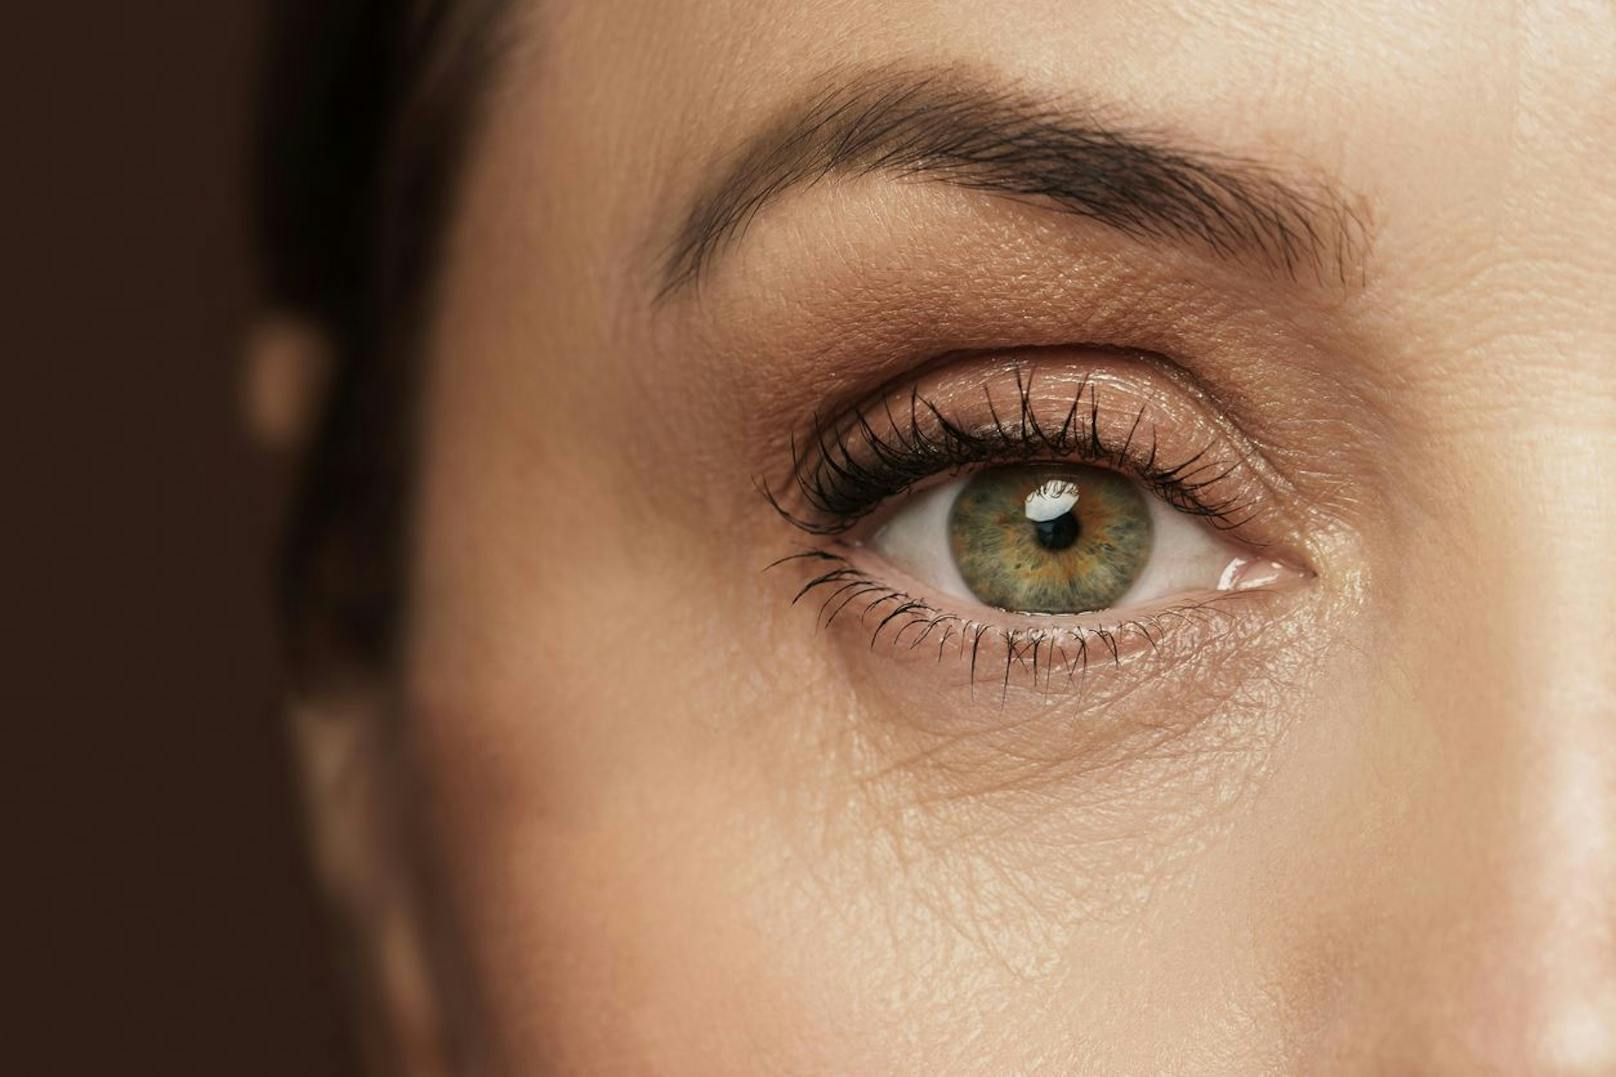 Wer bei einem Augeninfarkt nicht schnell die Symptome erkennt, wird es mit dauerhaften Konsequenzen zu tun haben, die dein Sehvermögen beeinträchtigen.